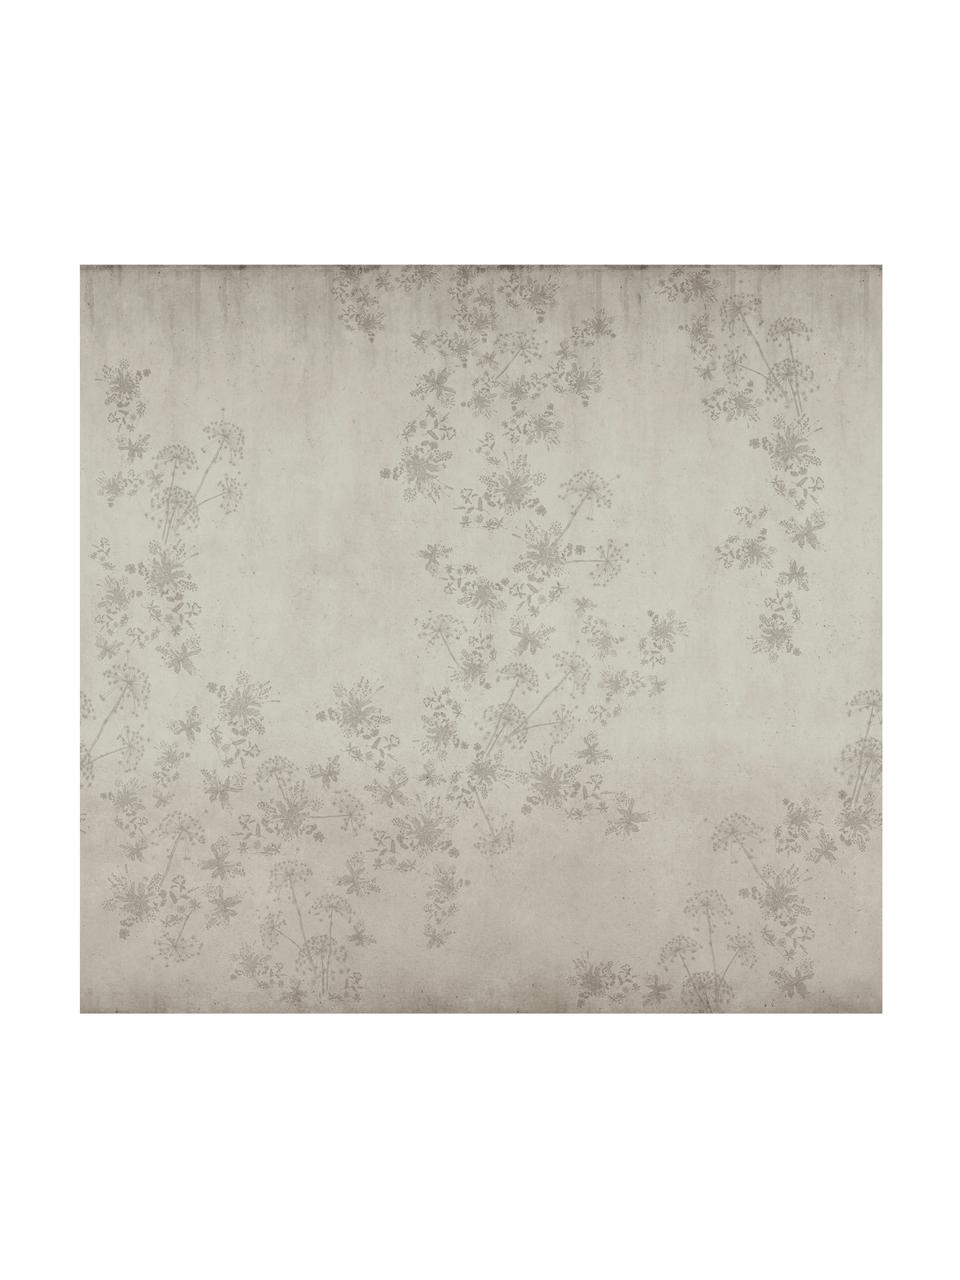 Fototapeta Wildflowers, Włóknina, Beżowy, S 300 x W 280 cm